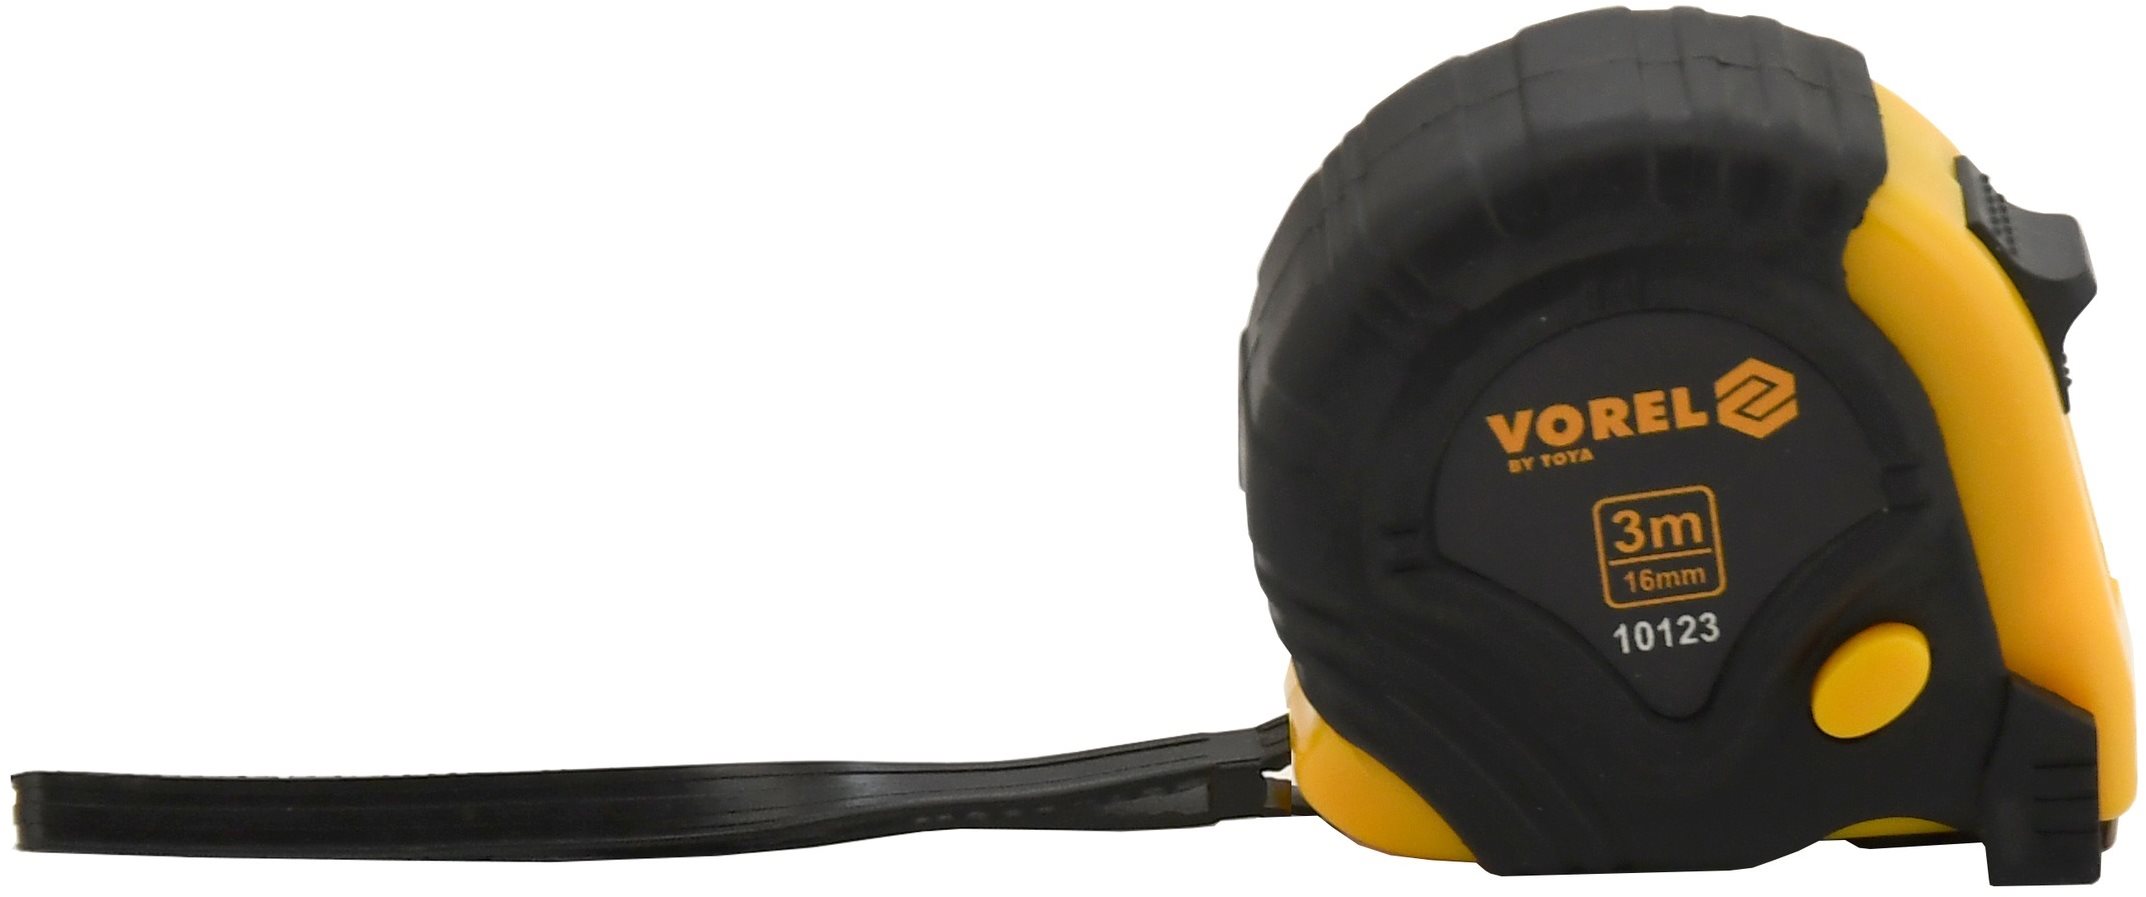 Vorel mérőszalag 3 m x 16 mm, sárga - fekete színben